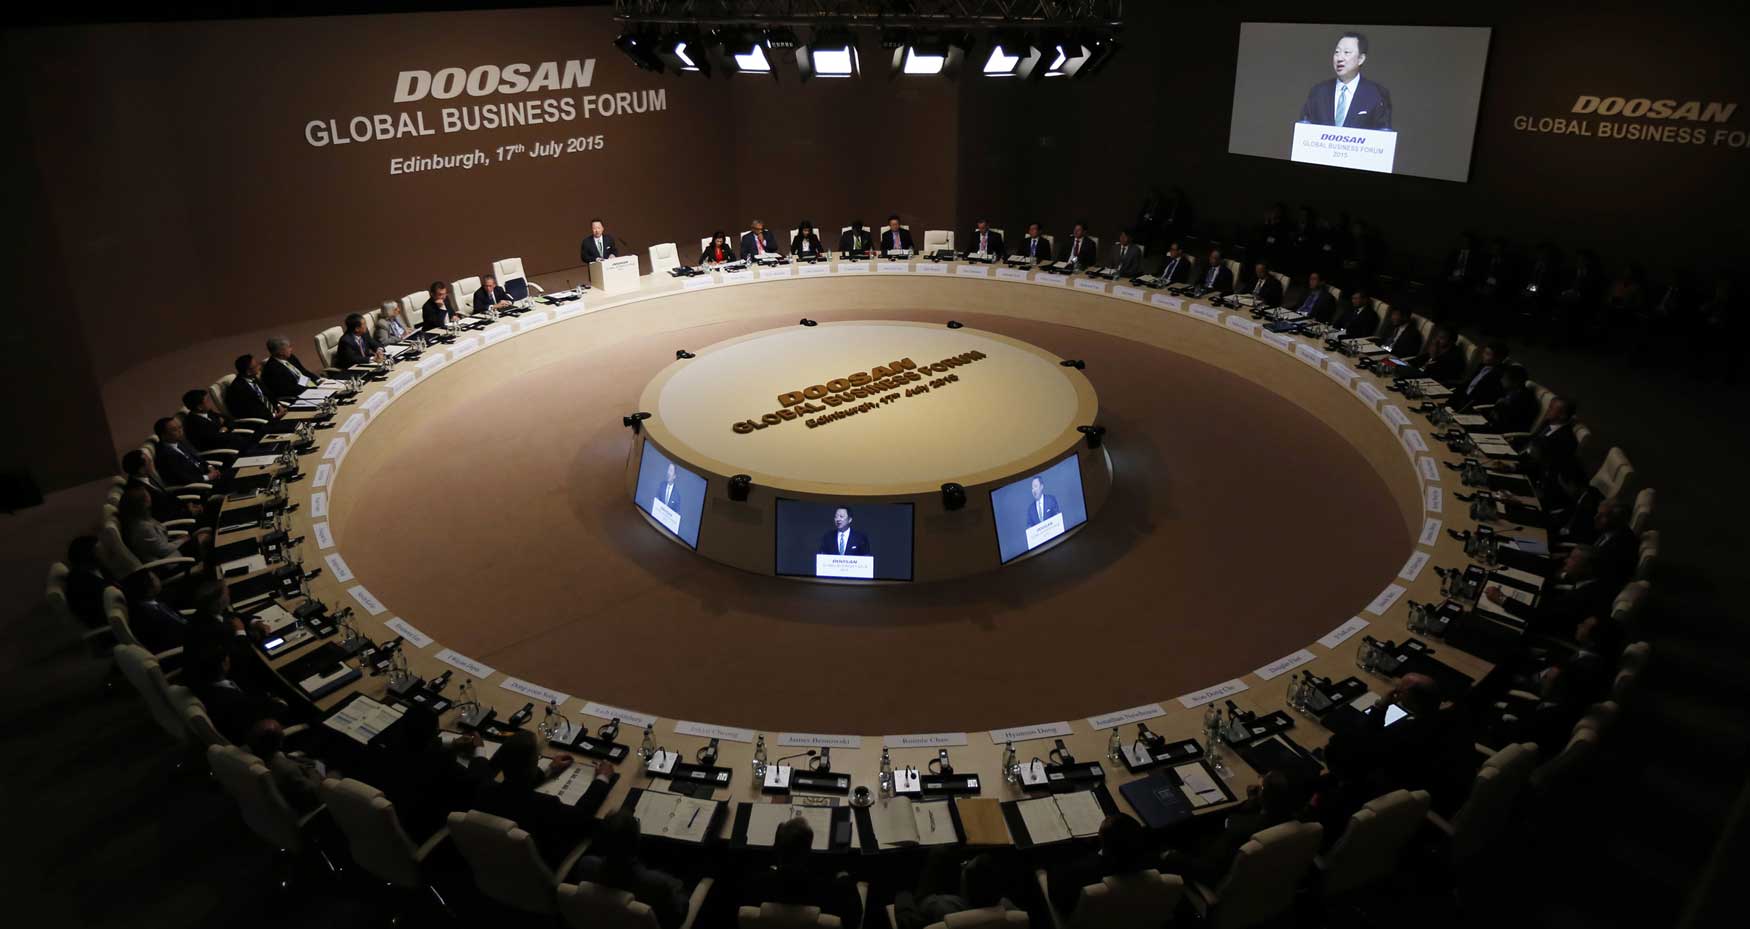 Doosan Global Business Forum 2015